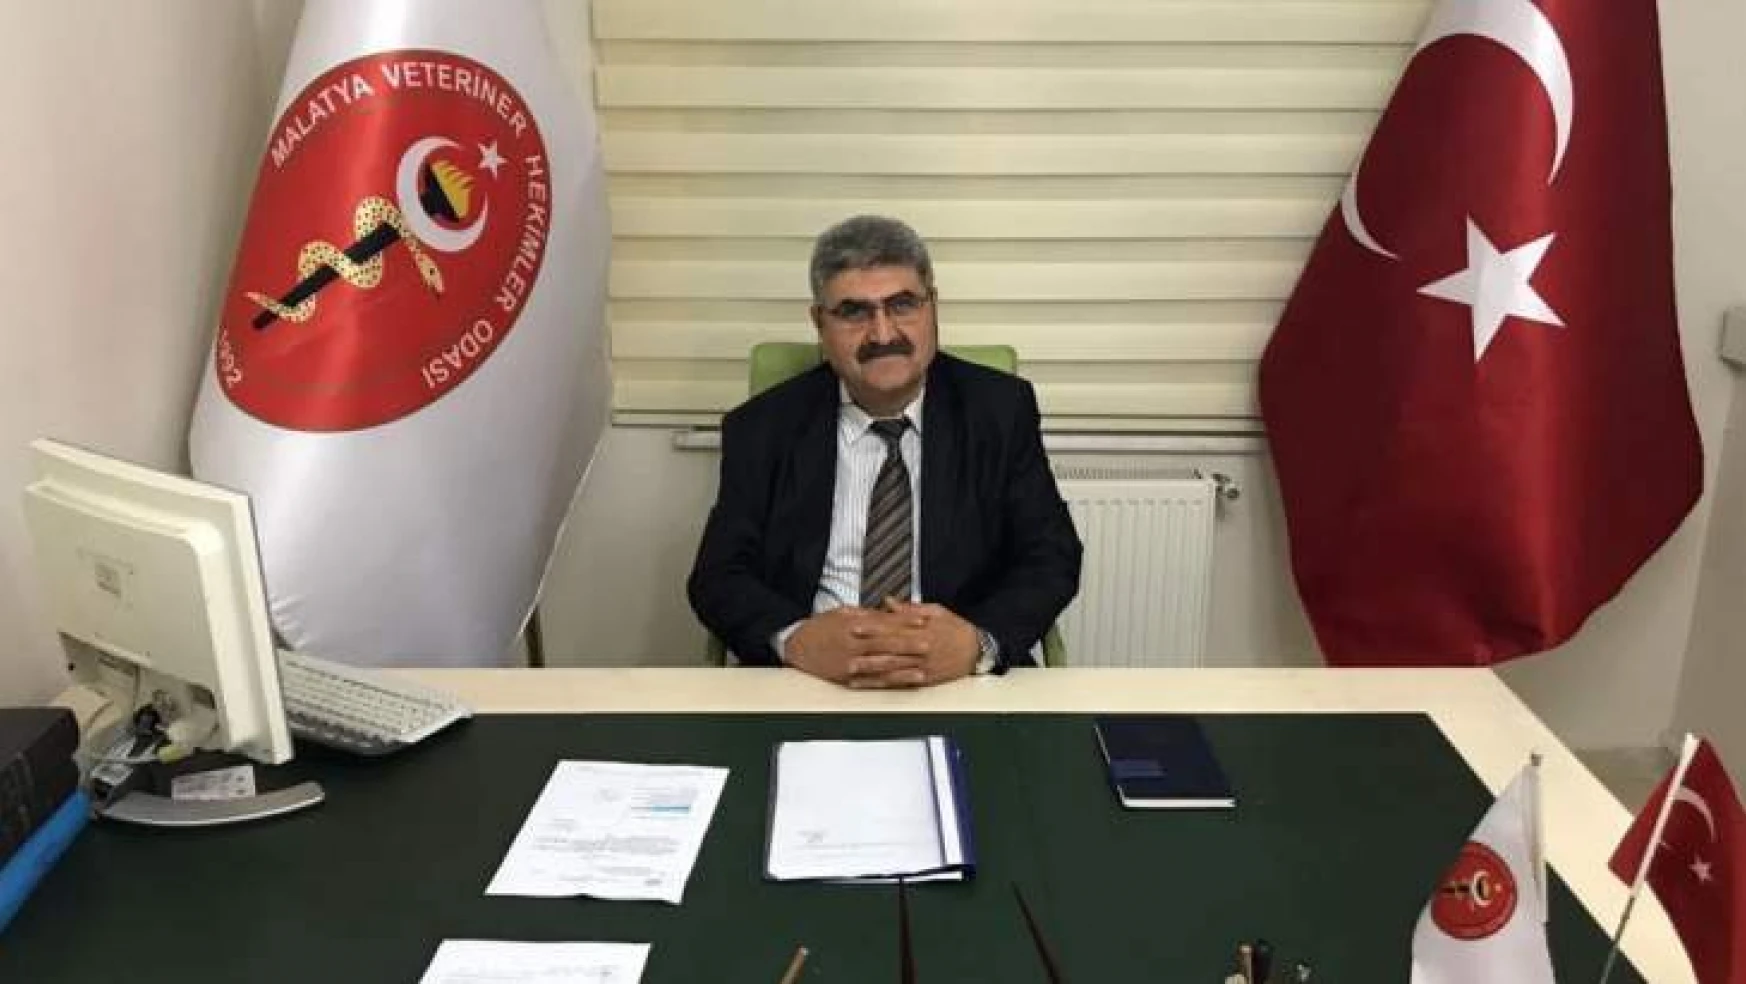 Malatya VHO Başkanı Ertuğrul ÖZDEMİR'in açıklaması